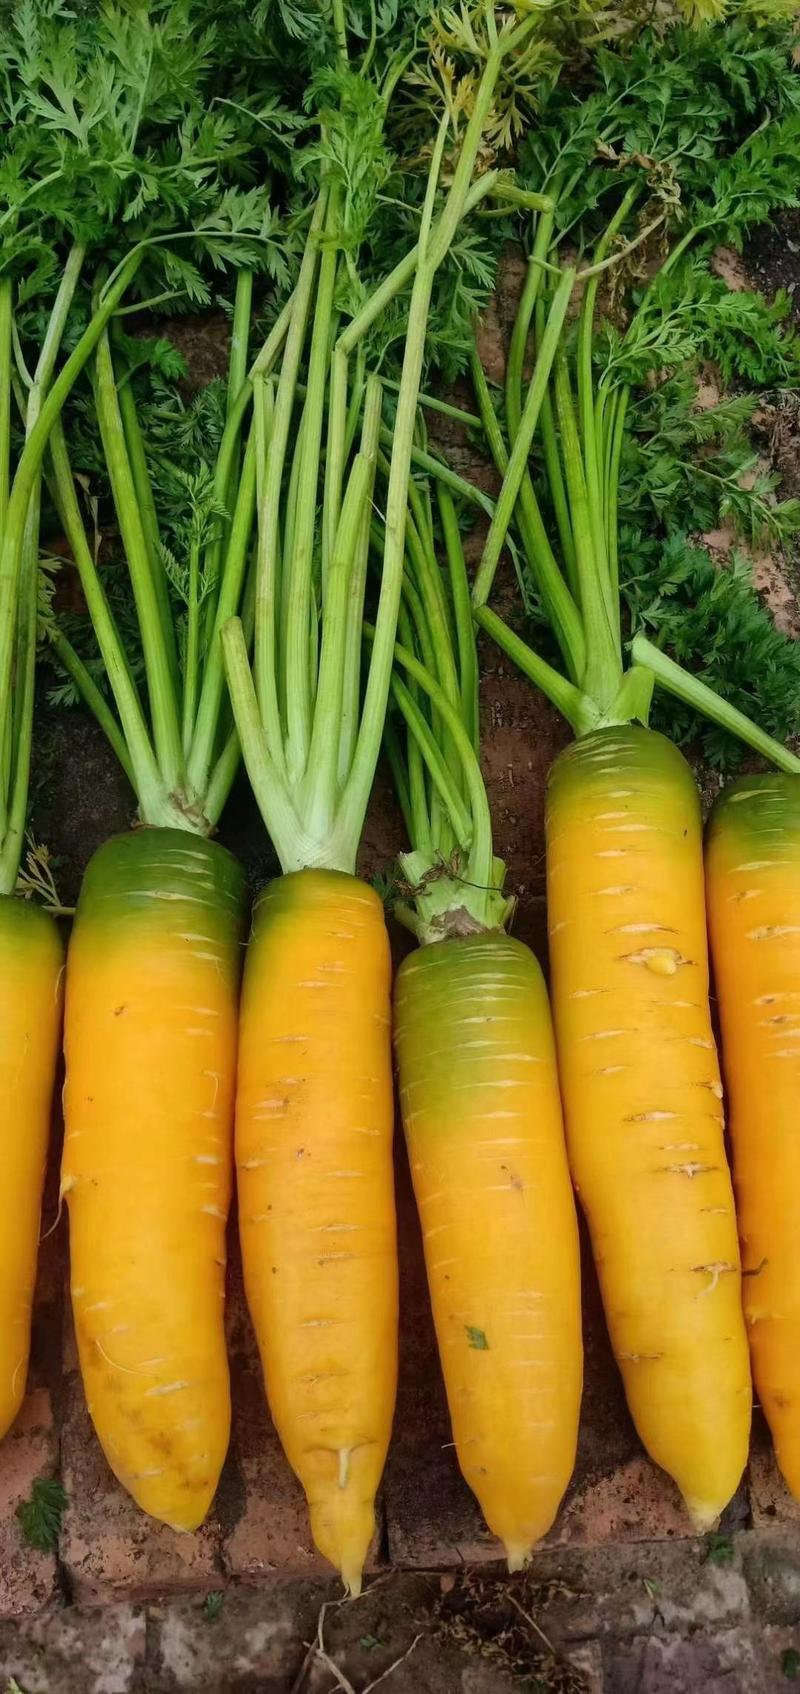 陕北精品黄萝卜大量供应有需要的老板来电洽谈供应全国各市场